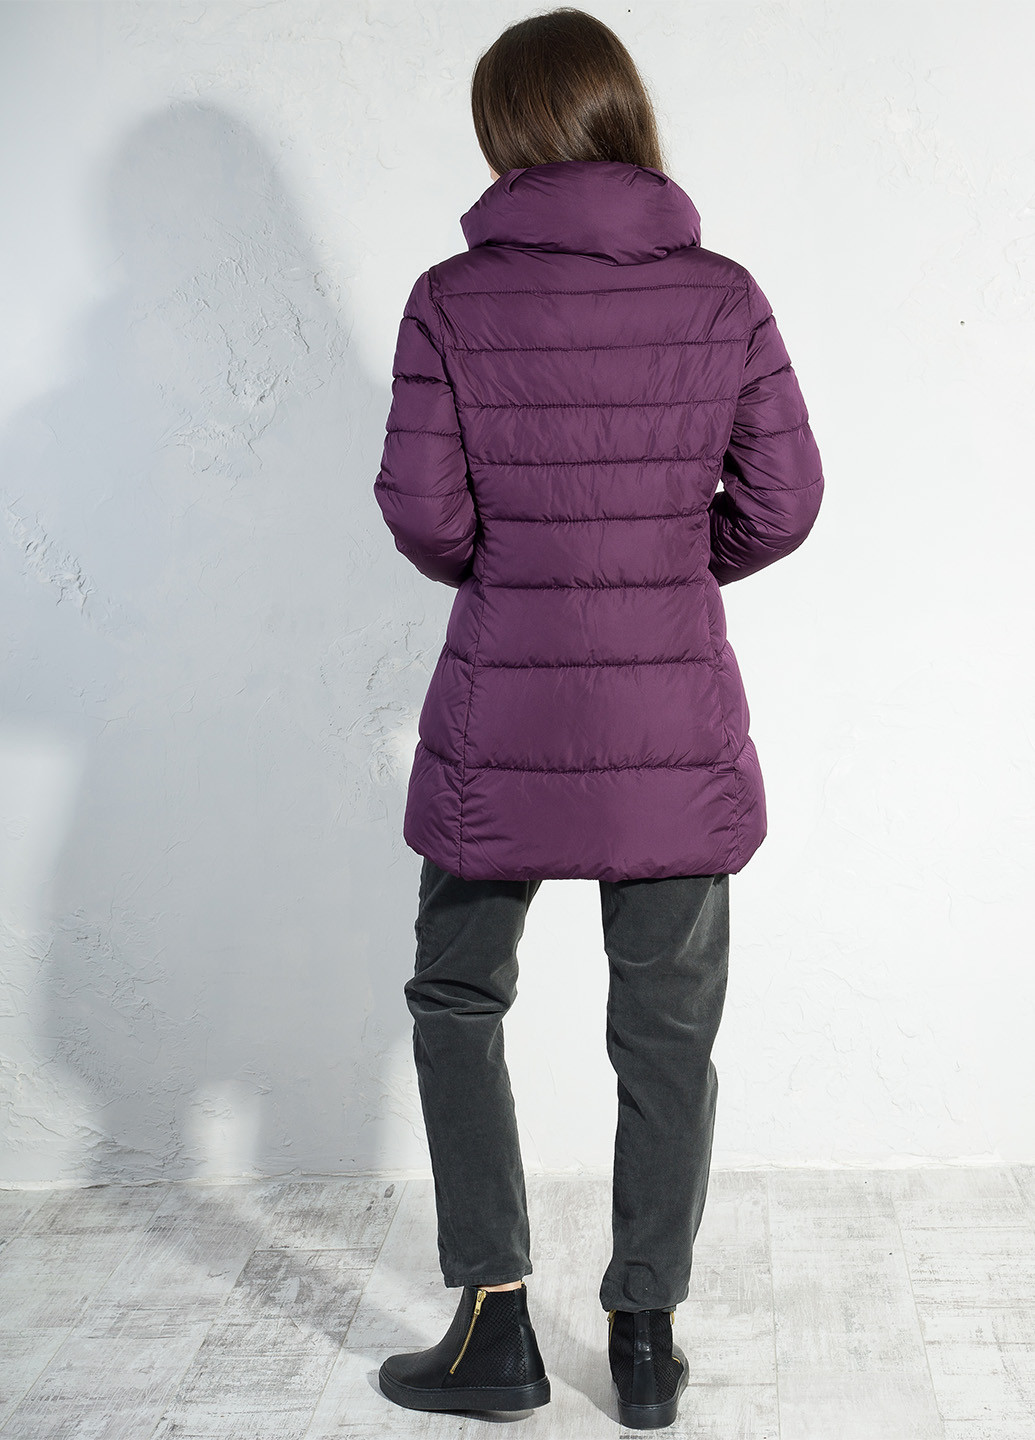 Фиолетовая зимняя куртка Trussardi